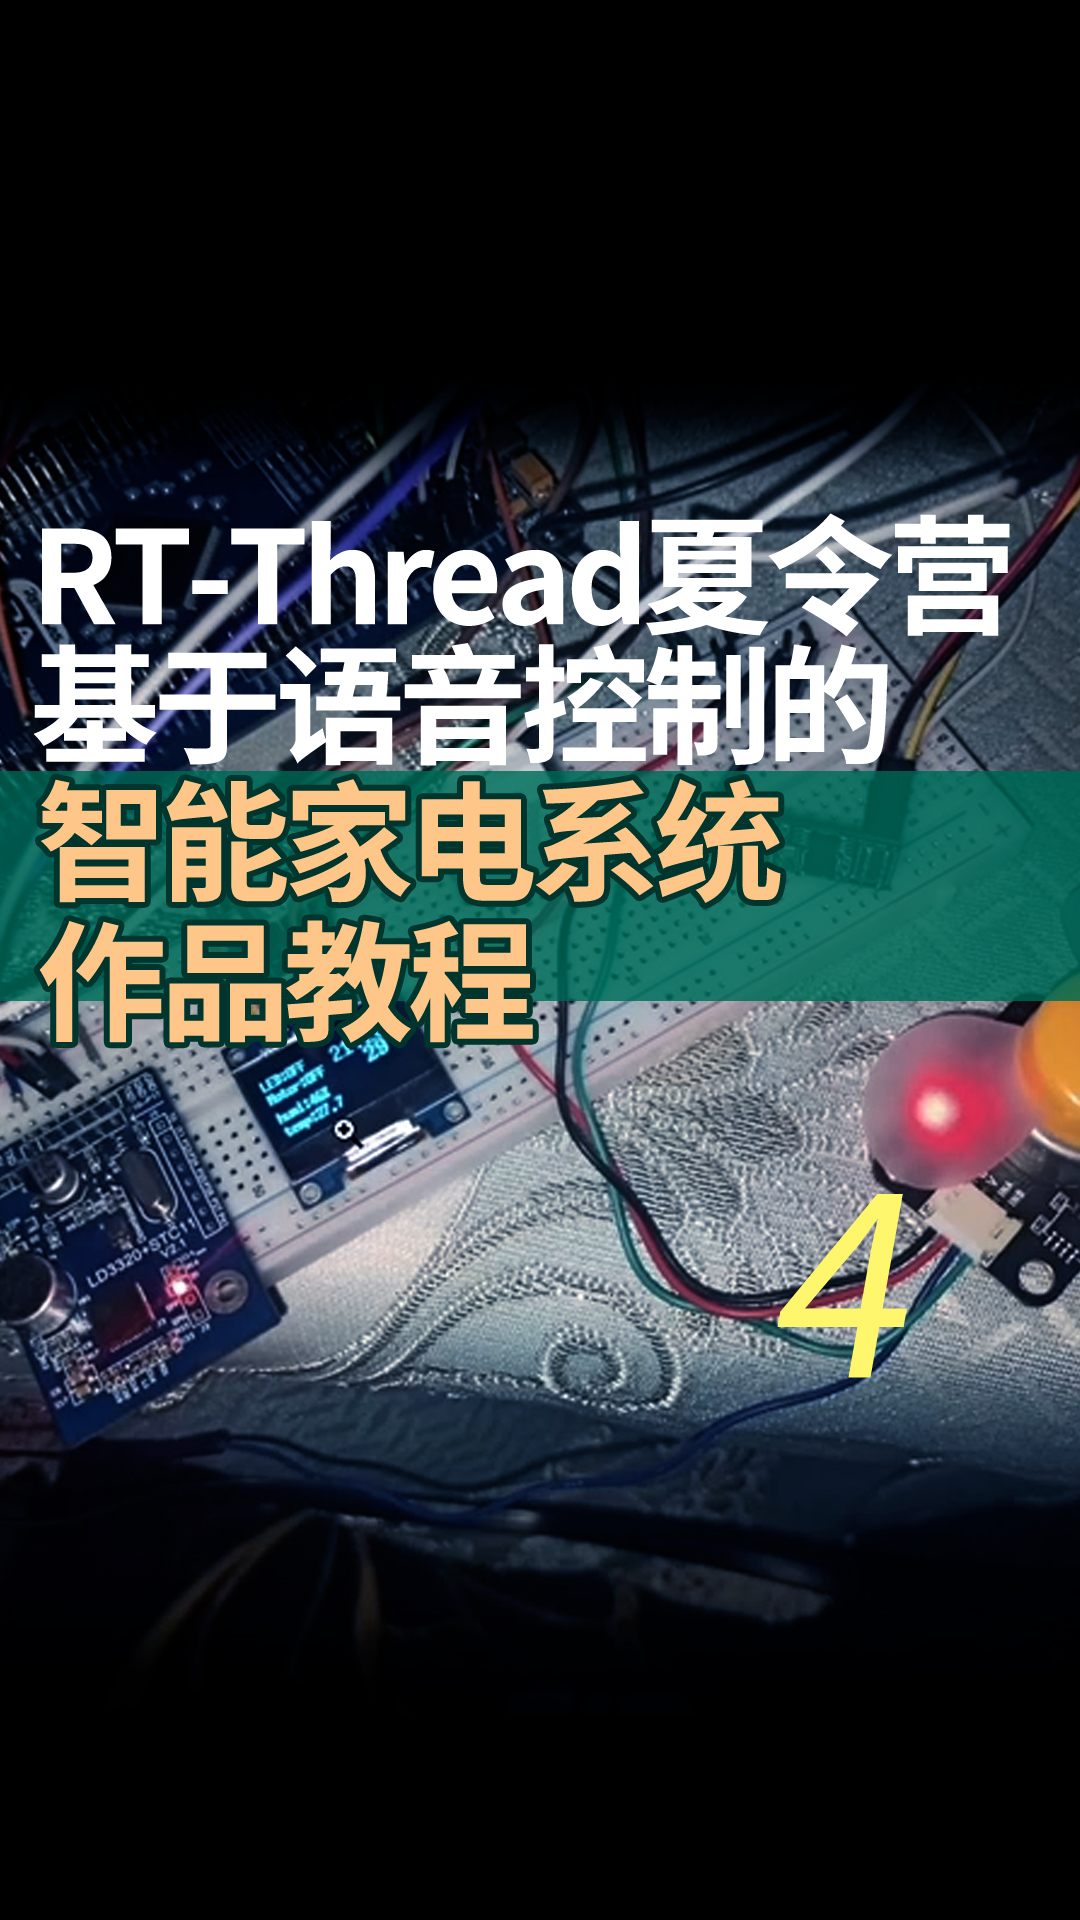 RT-Thread夏令营基于语音控制的智能家电系统作品教程 4语音模块修改指令